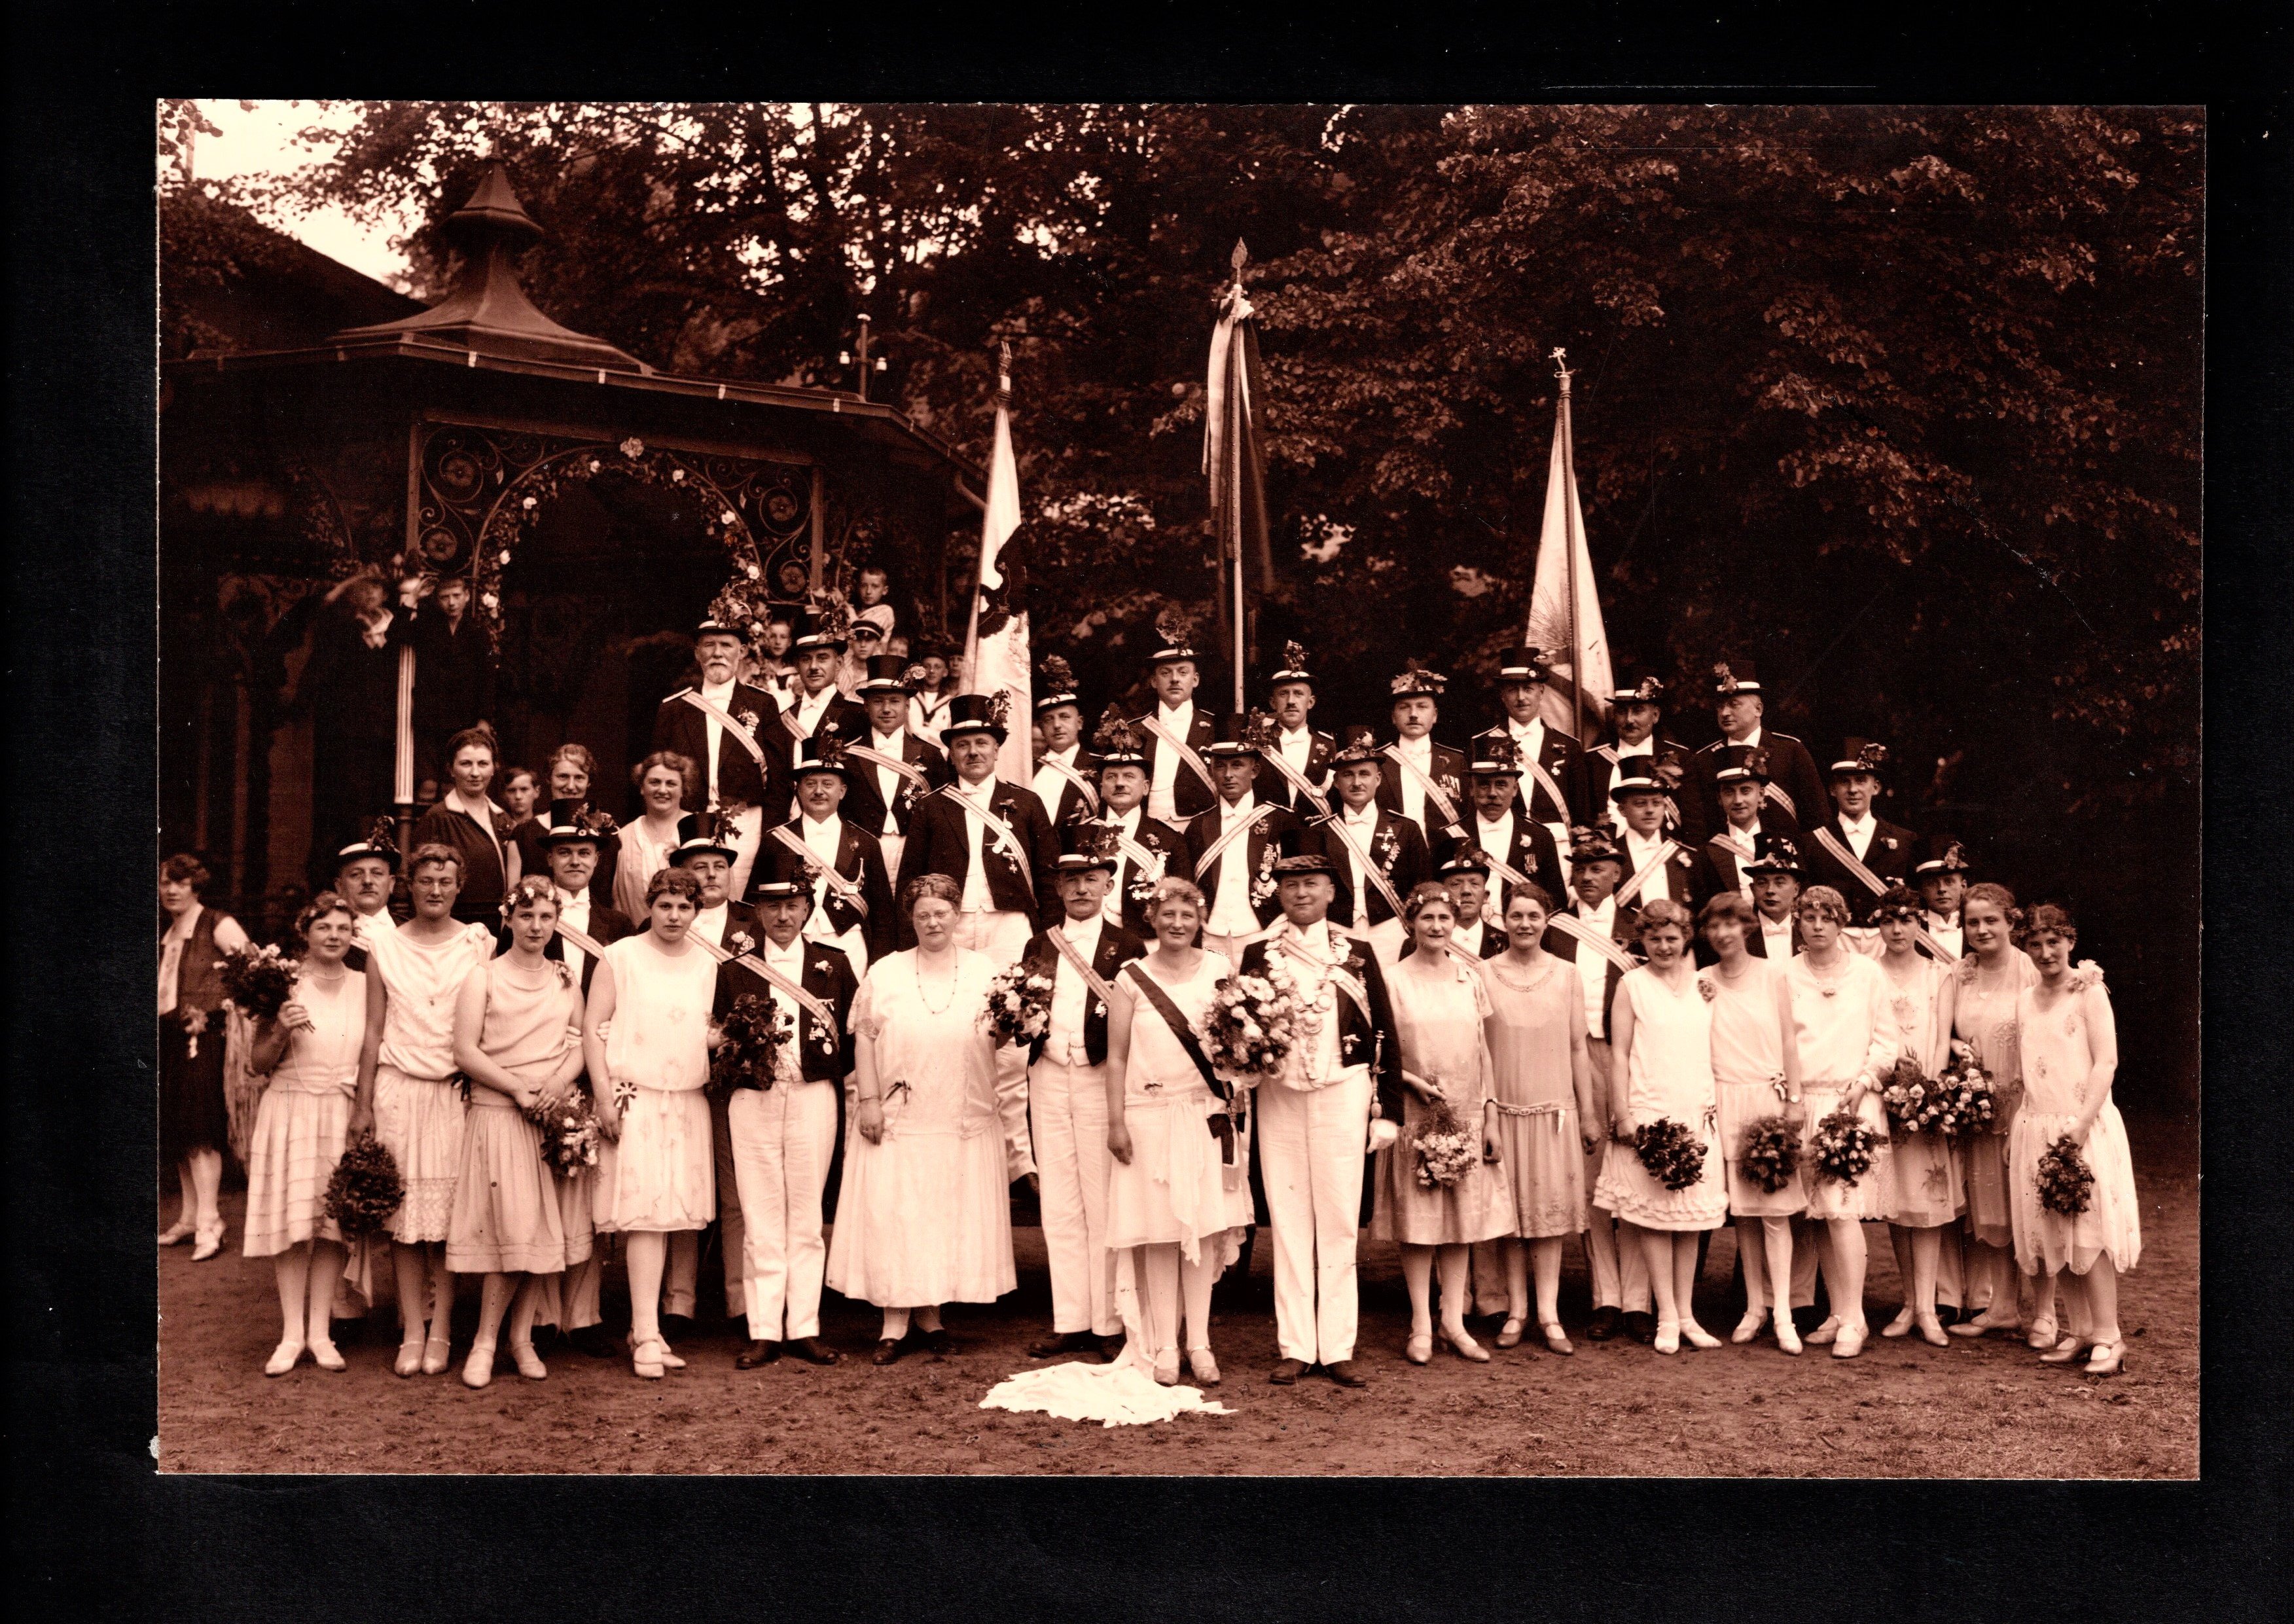 Fotografie der Throngesellschaft des Lippstädter Schützenvereins von 1927 (Erwin Speich CC BY-NC-ND)